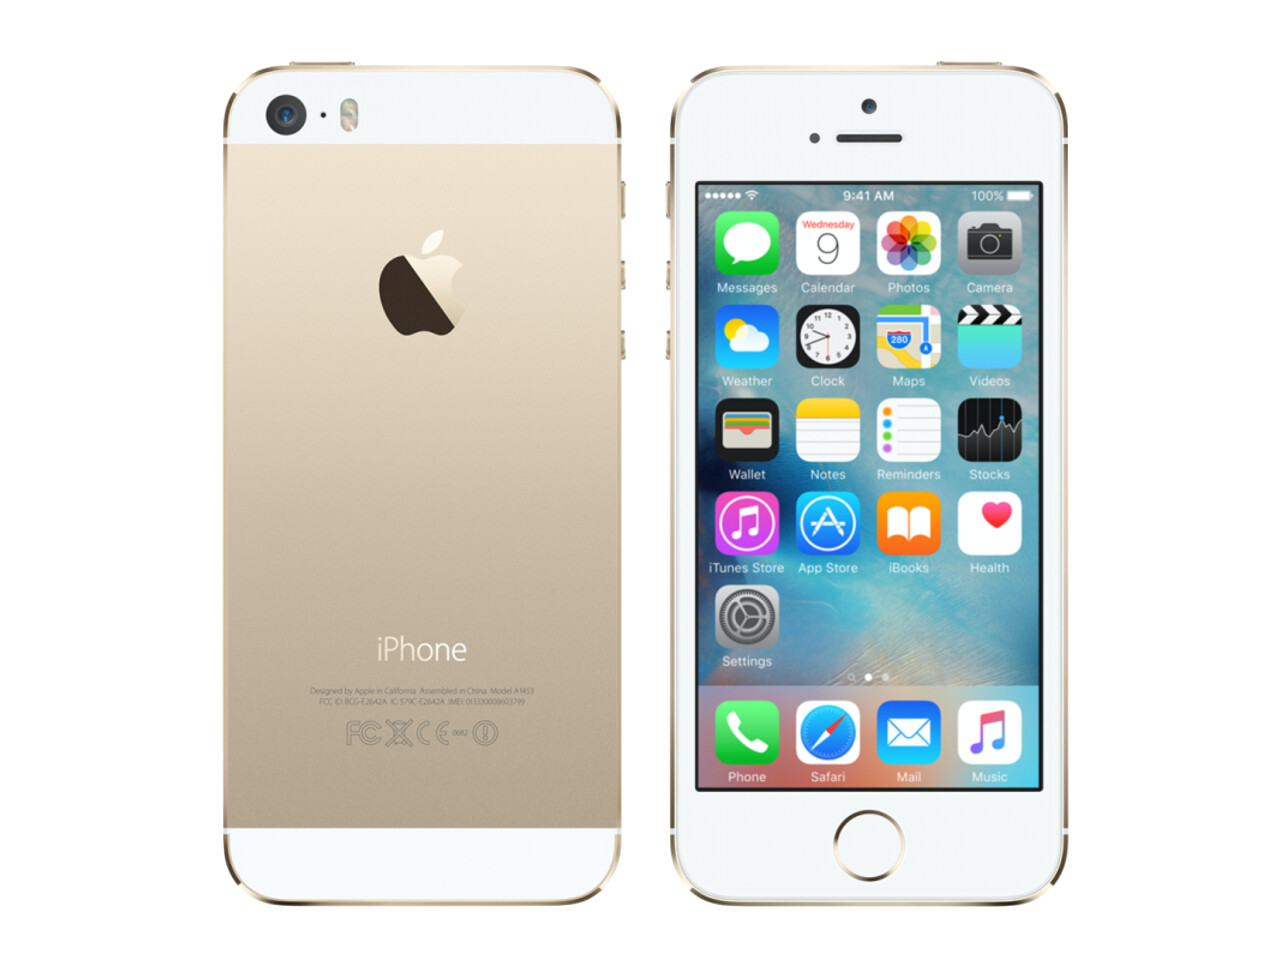 iPhone 5s – A1533, A1453, A1453, A1518, A1528, A1530